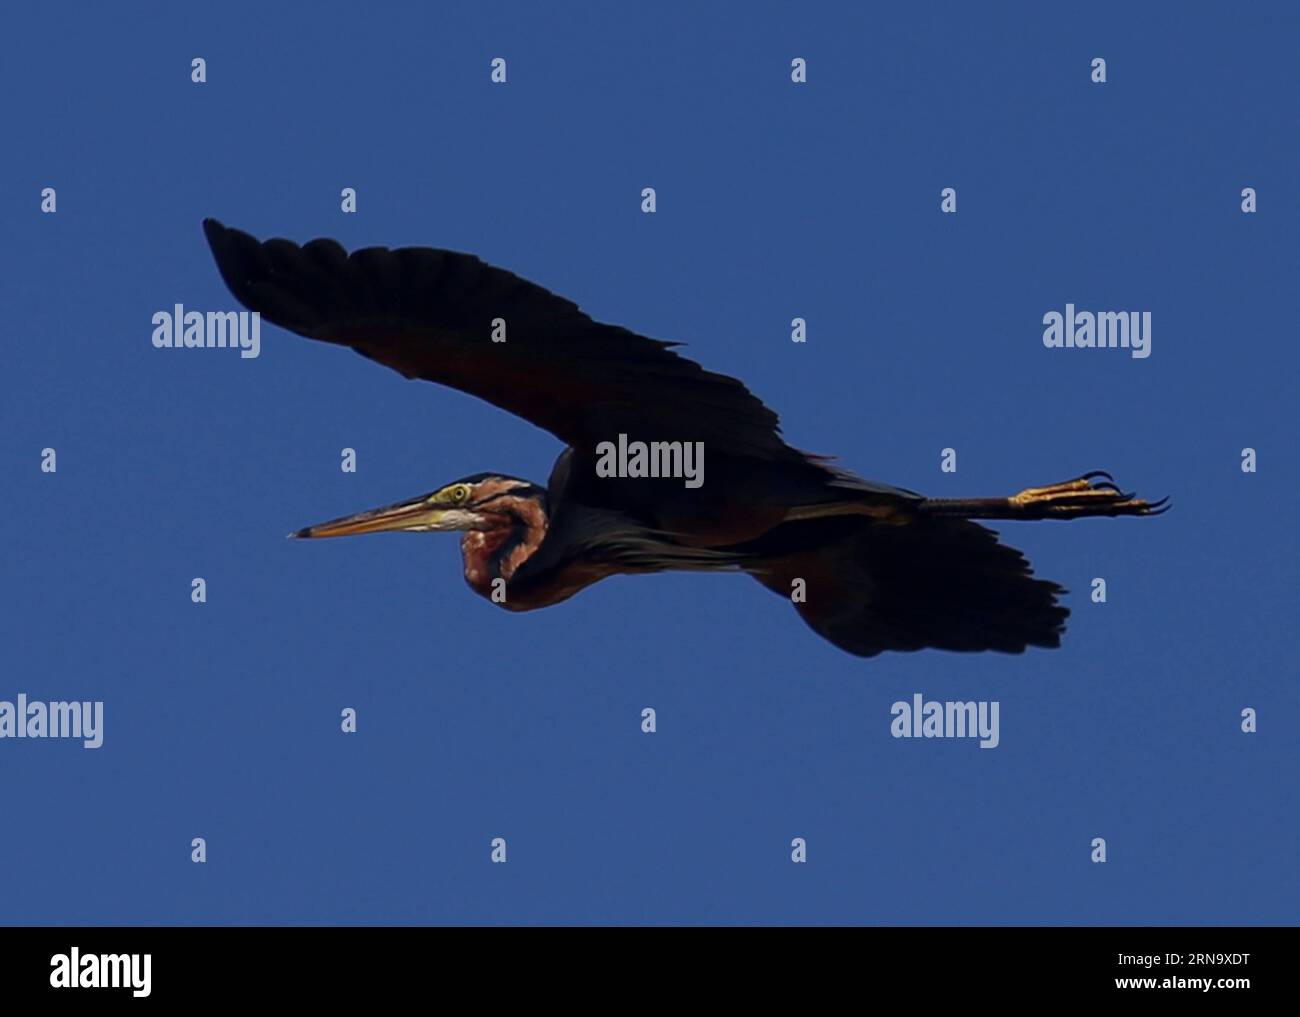 (151223) -- BAGO, 23 de diciembre de 2015 -- Foto tomada el 23 de diciembre de 2015 muestra una garza púrpura volando sobre el Santuario de Vida Silvestre Humedales Moeyungyi en la región de Bago, Myanmar. Moeyungyi Wetlands está situado en Bago Division. Cada año, millones de aves suelen volar desde el hemisferio norte hacia el sur a lo largo de la ruta aérea australiana de Asia oriental para escapar del invierno. Se detienen a descansar y alimentarse en Asia. Por lo tanto, la vía aérea contiene una red de humedales y Moeyungyi es uno de los cuales podría cooperar con ciertas aves migradas, así como con las domésticas. ) MYANMAR-BAGO-WINDLAND-LIFE UxAung PUBLICATIONxNOTxINxCHN 151223 B Foto de stock